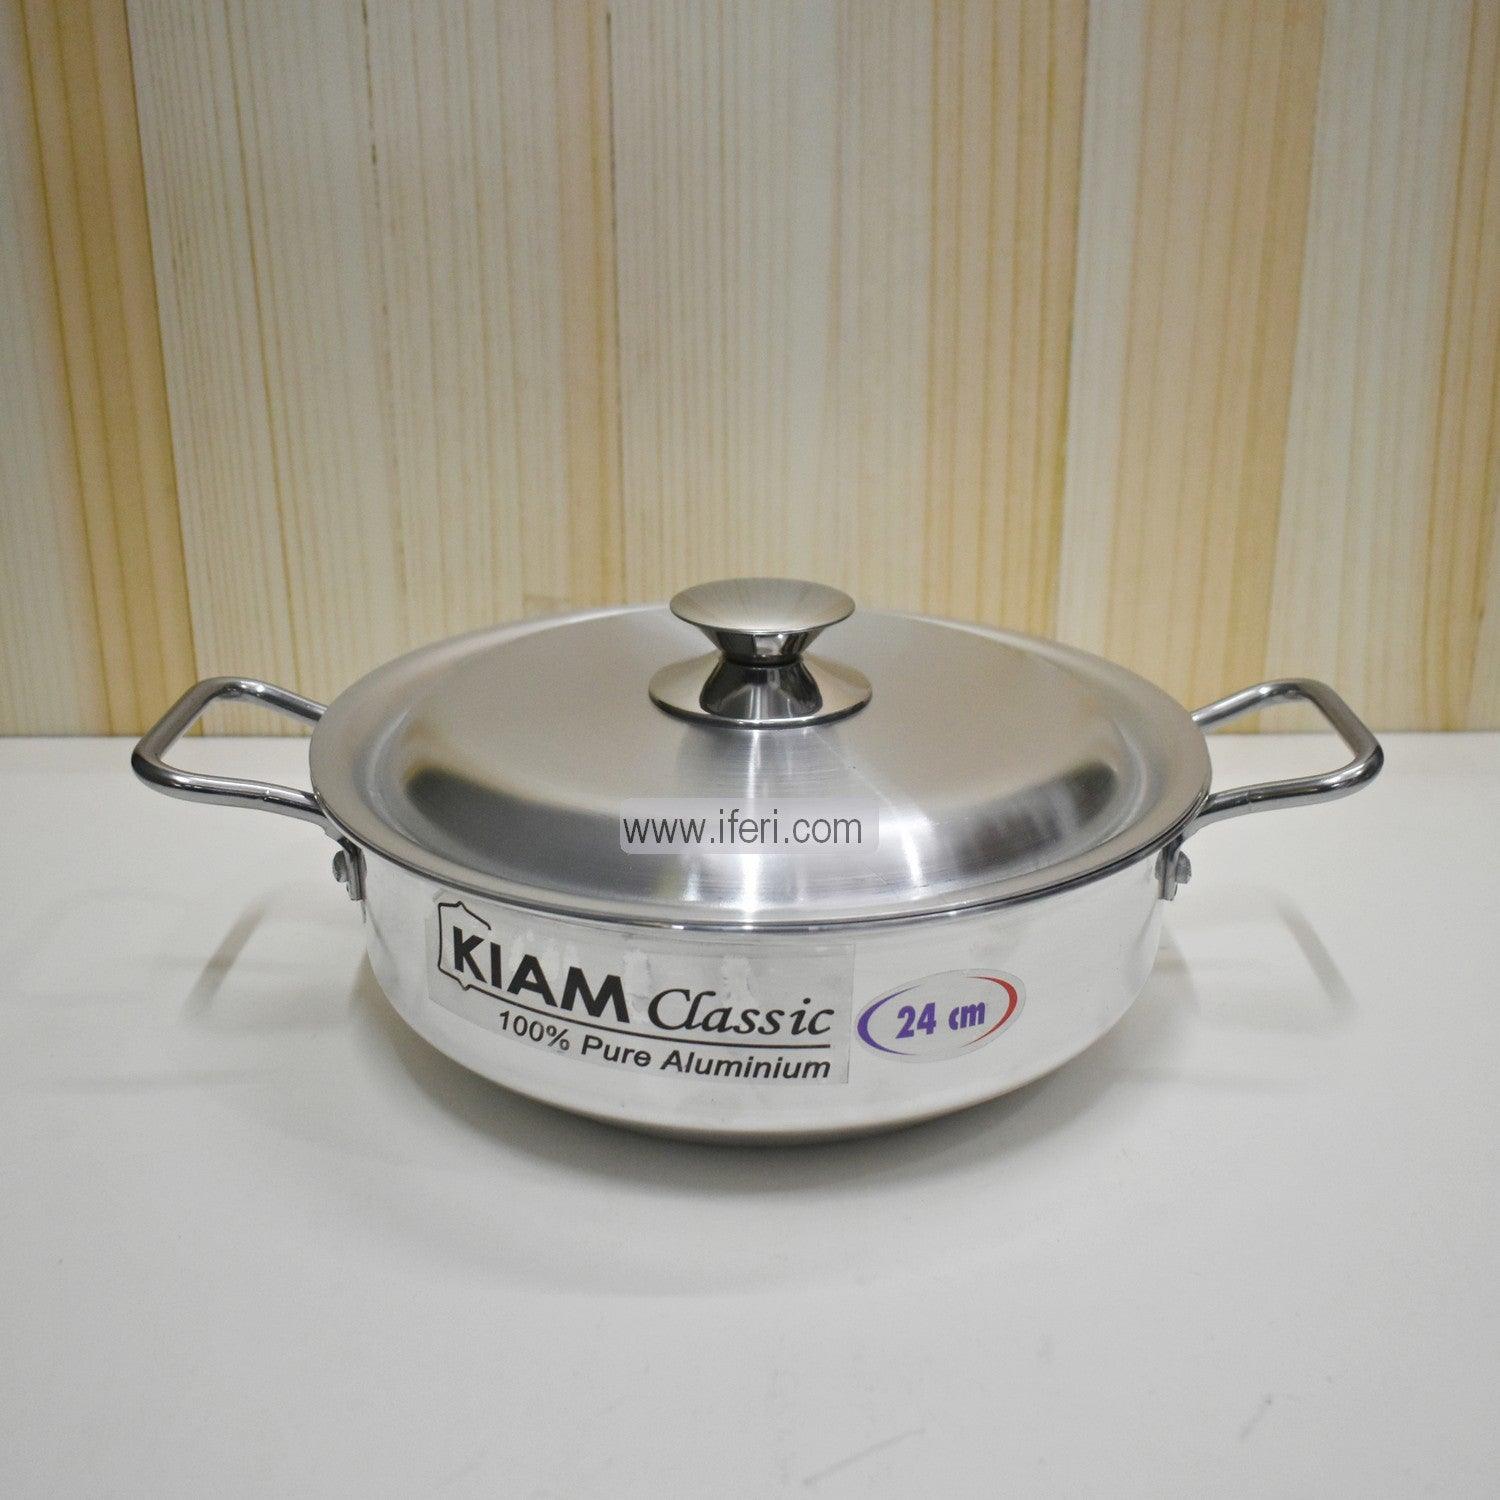 24 cm Kiam Aluminium Classic Korai Cookware With Aluminium Lid BCG0220 Price in Bangladesh - iferi.com